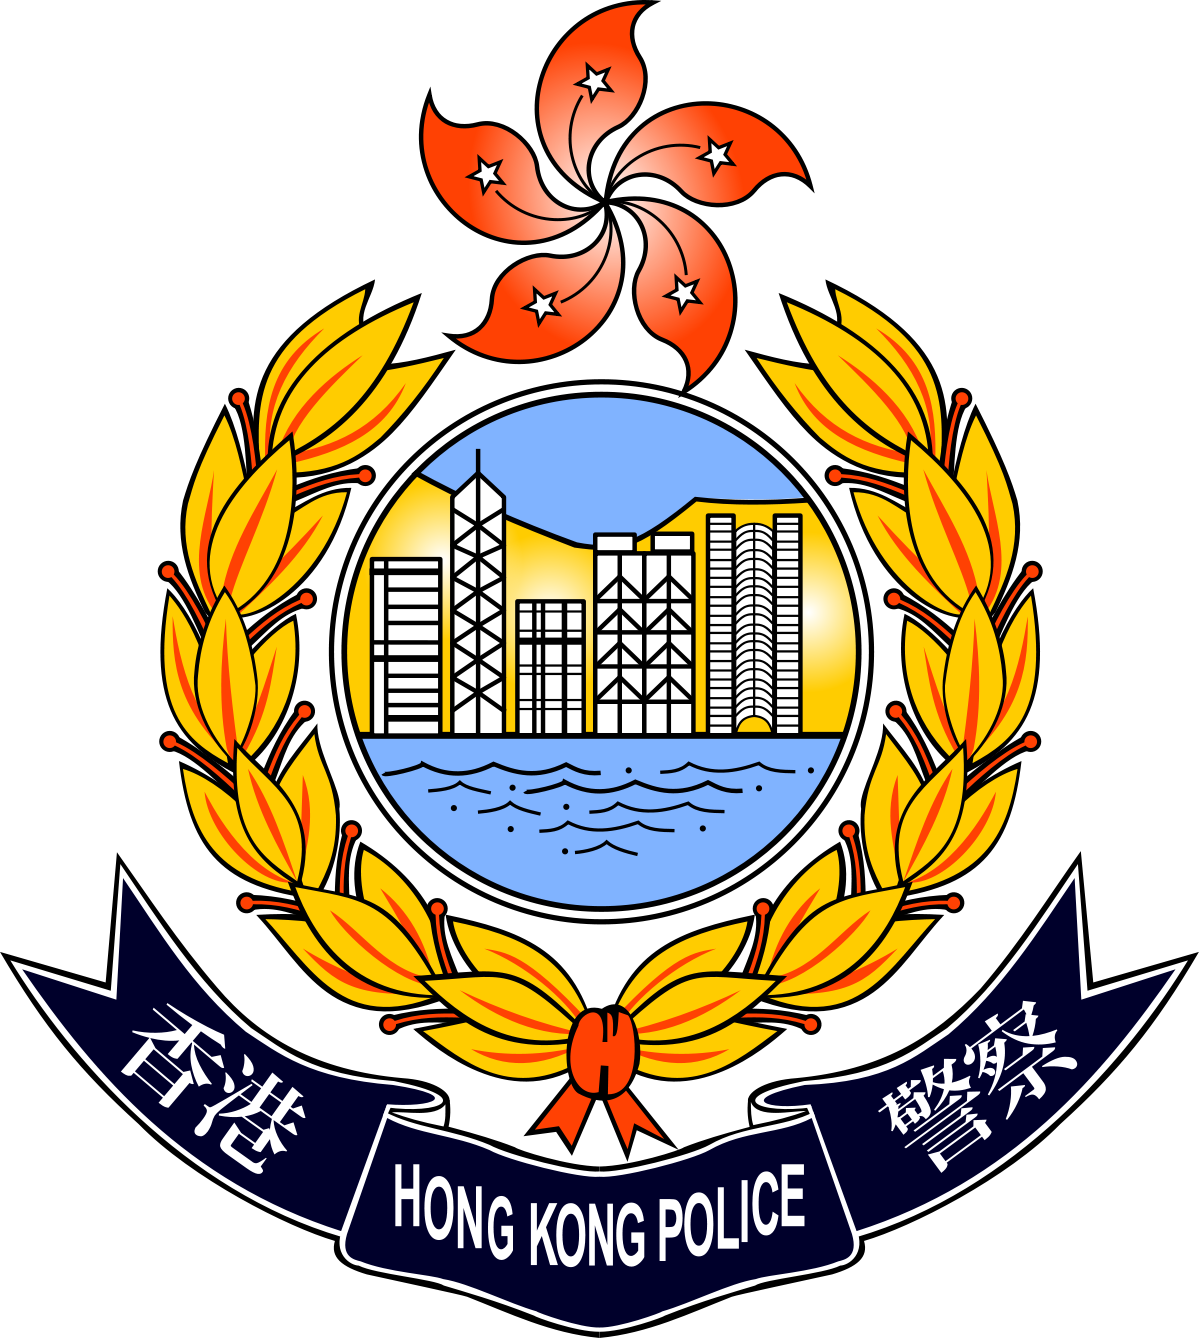 Hong Kong Police Force - Hong Kong Police Department (1200x1338)